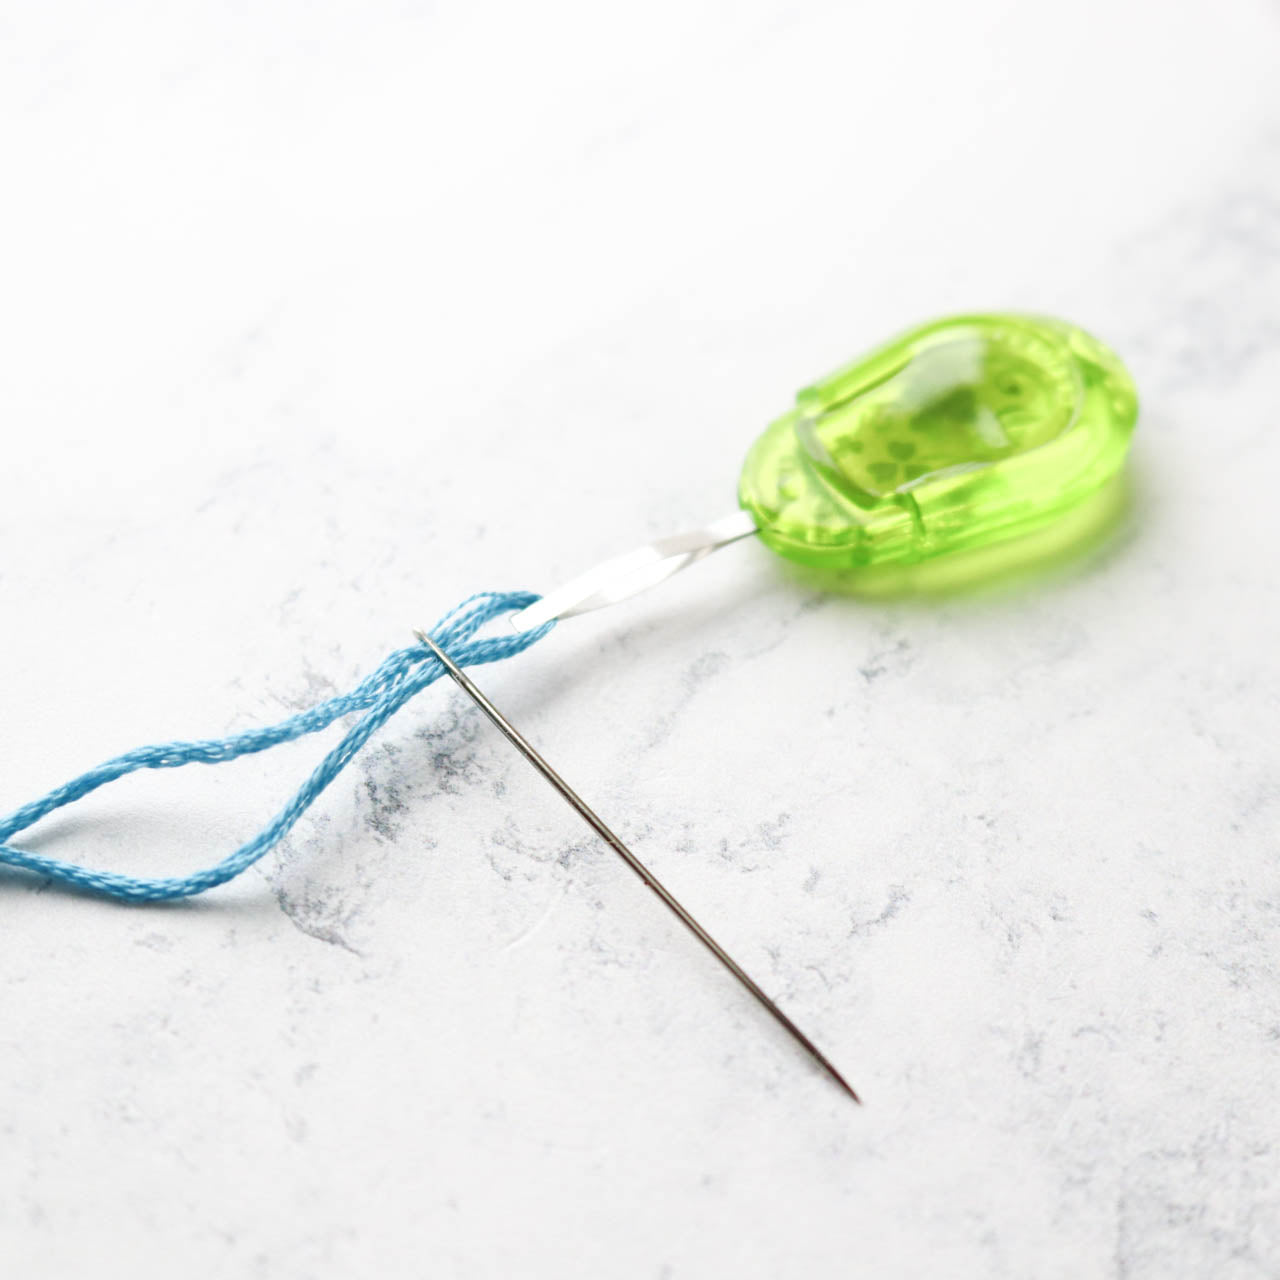 Flat Tip Needle Threader - Stitched Modern